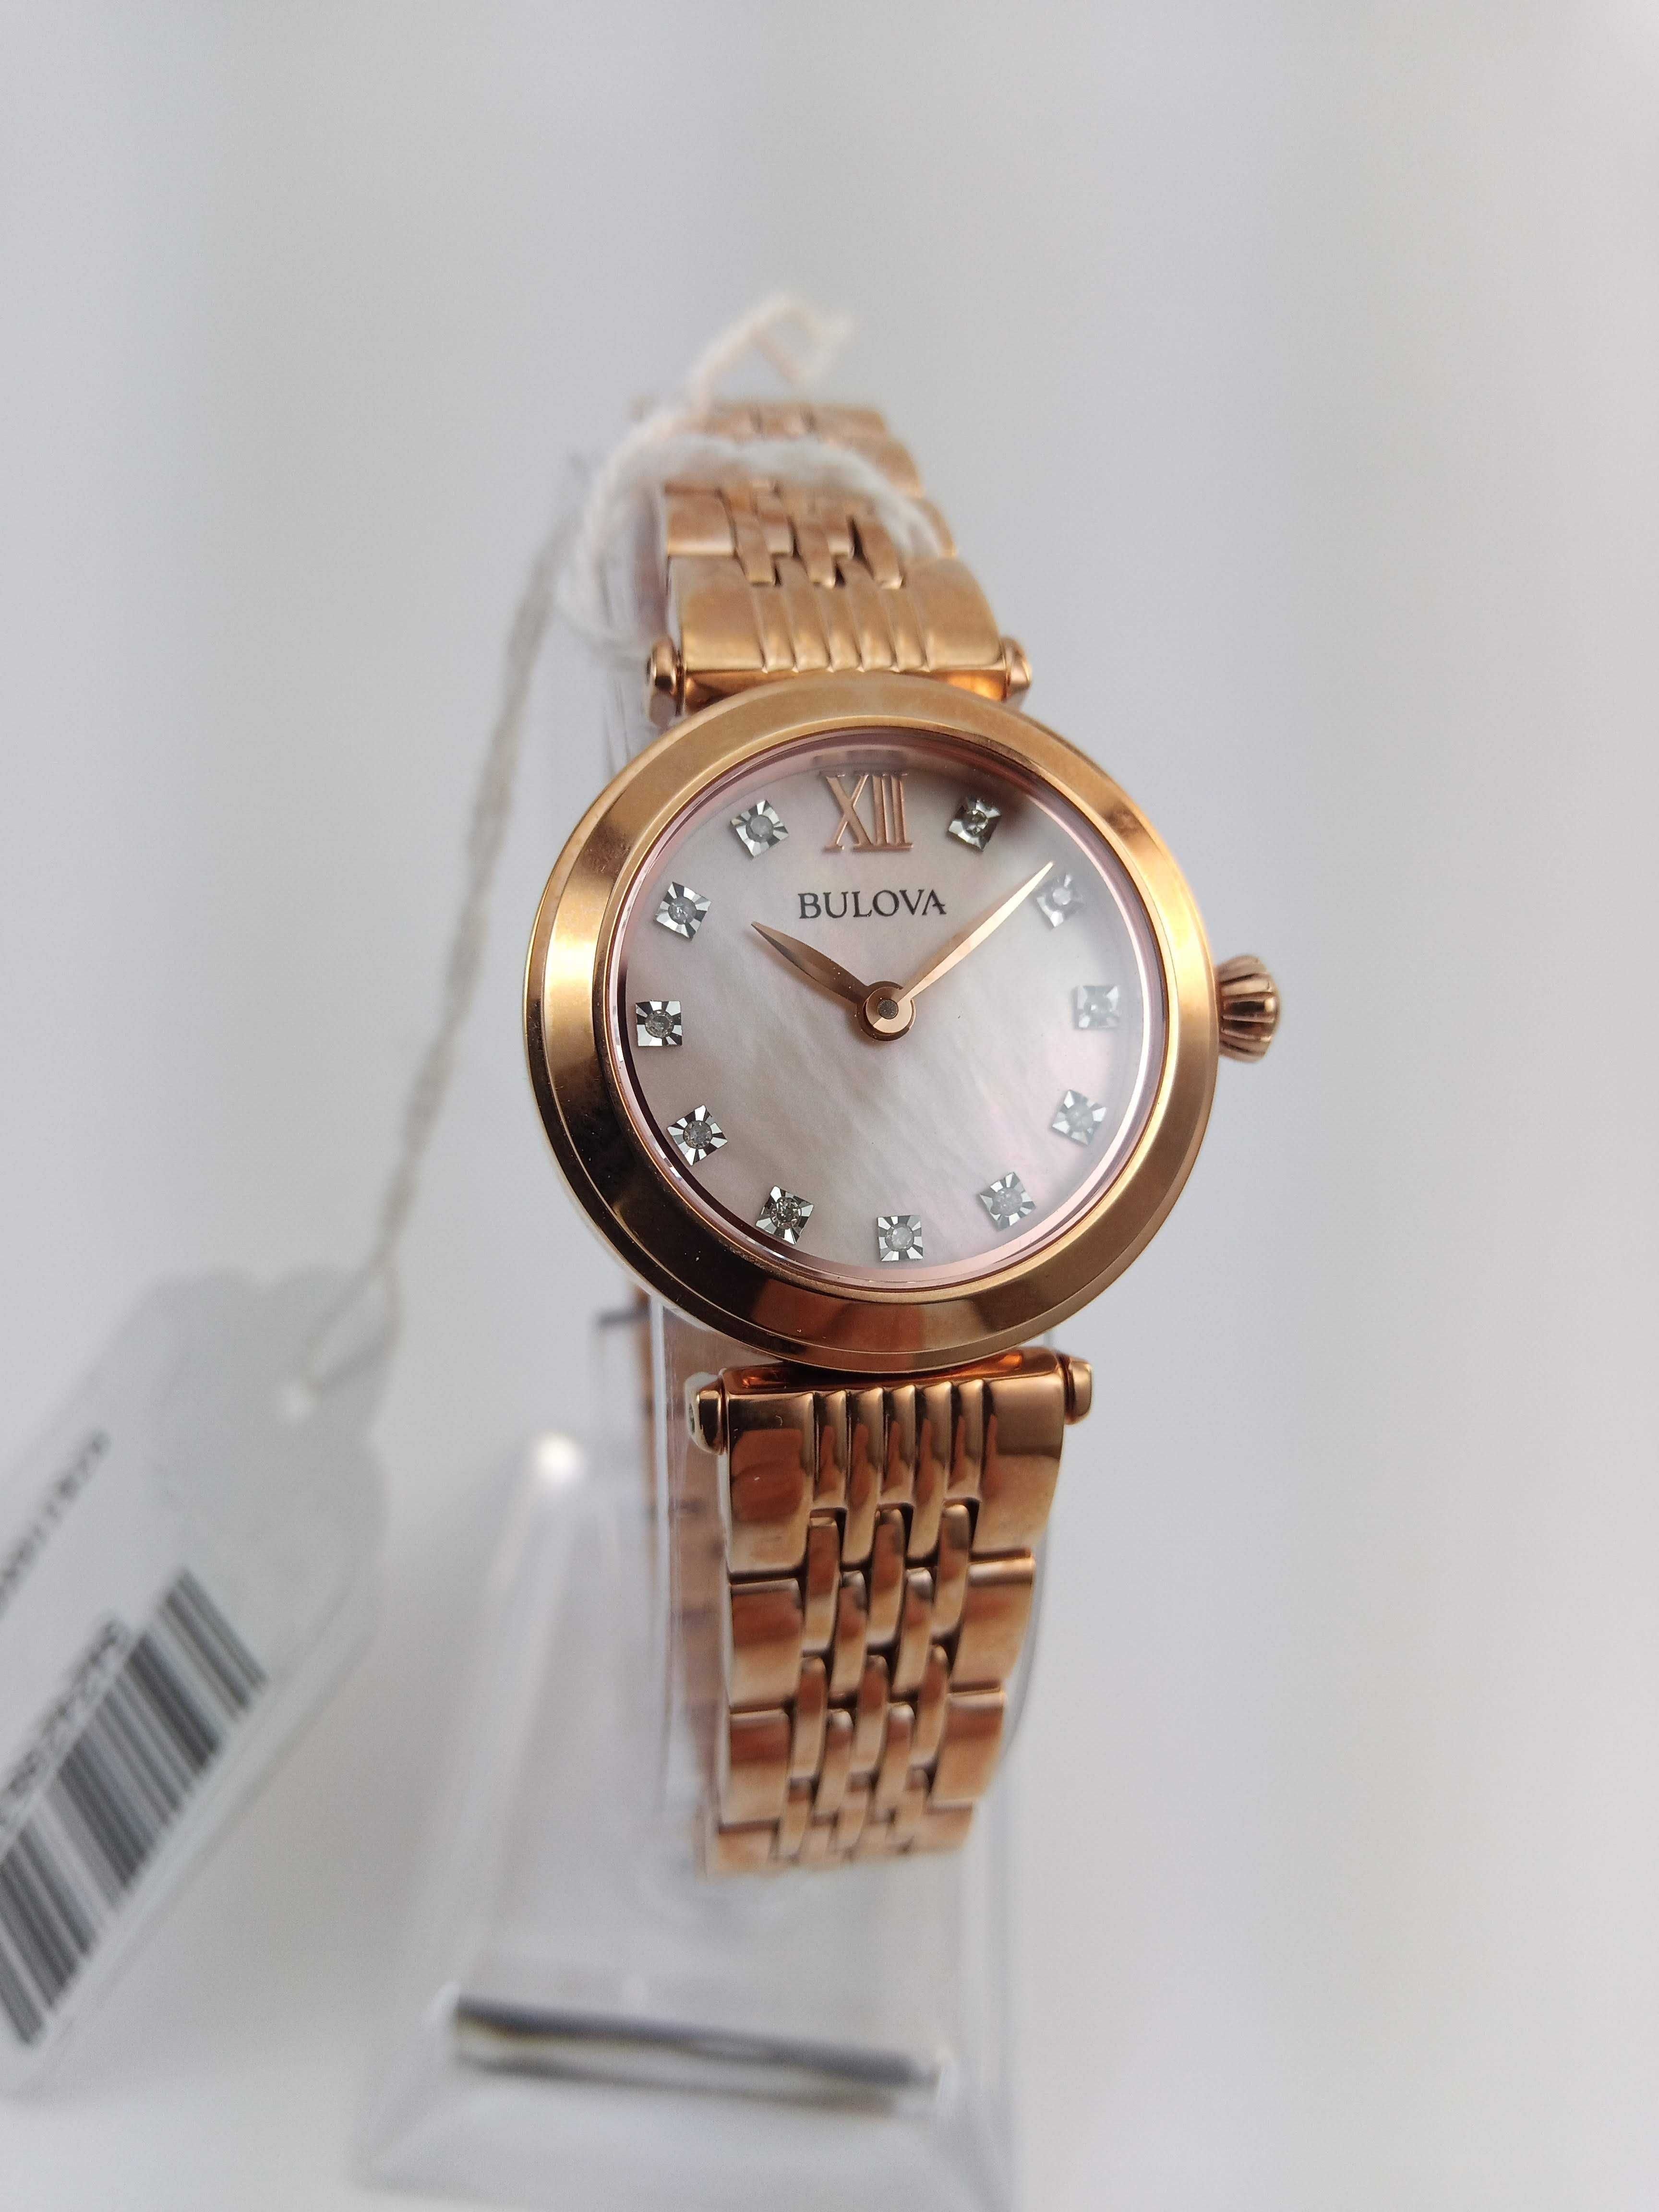 Японские женские часы, 11 бриллиантов Bulova 97S116, в подарок девушке